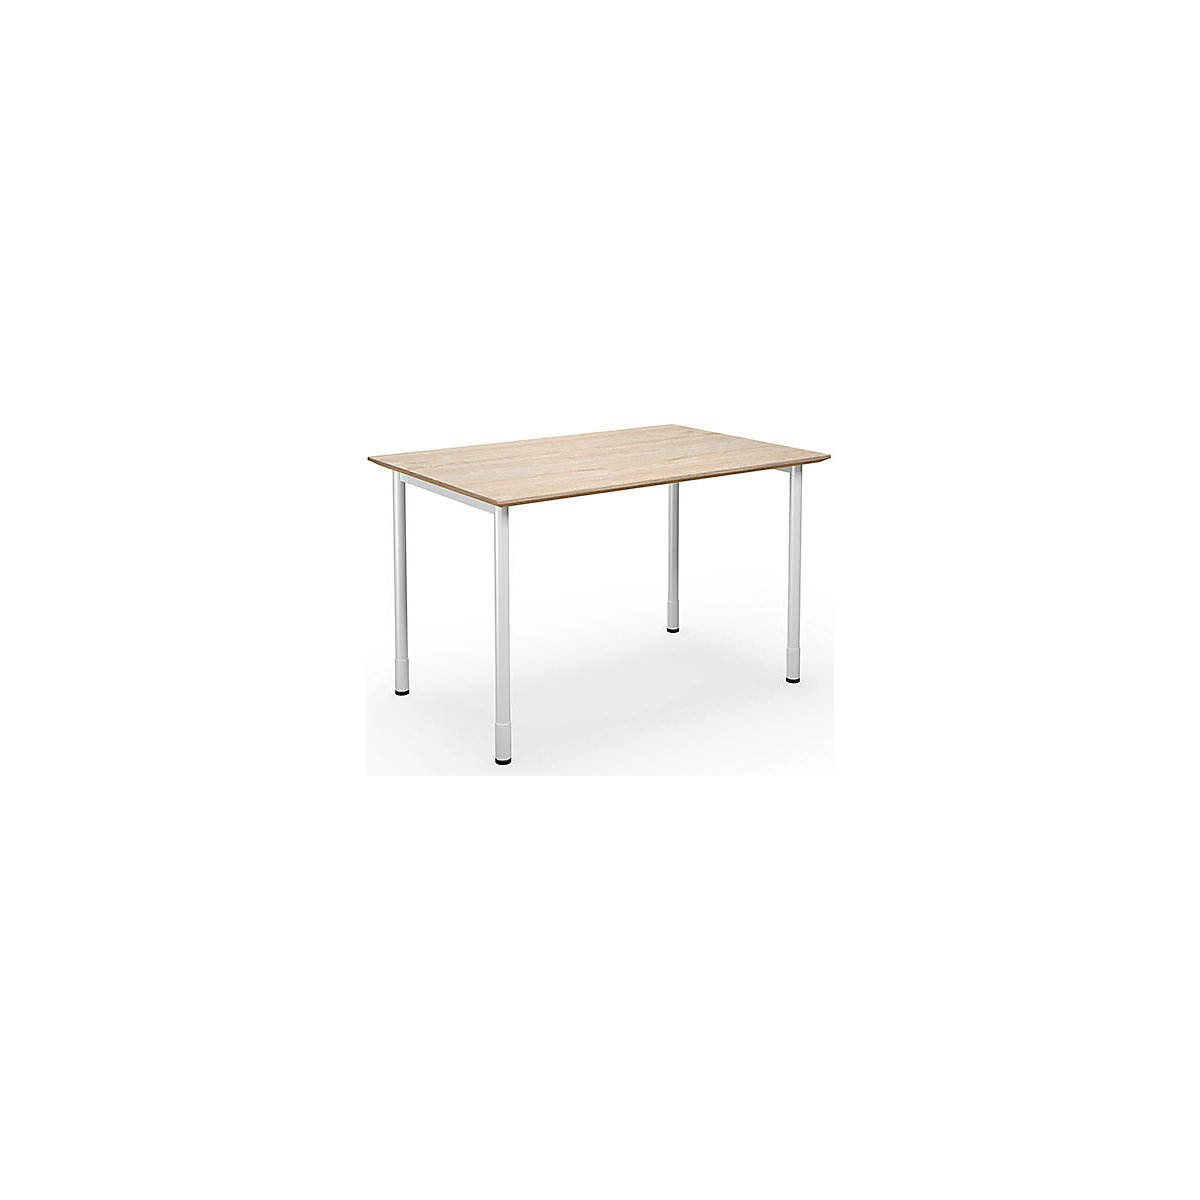 Multifunctionele tafel DUO-C Trend, recht blad